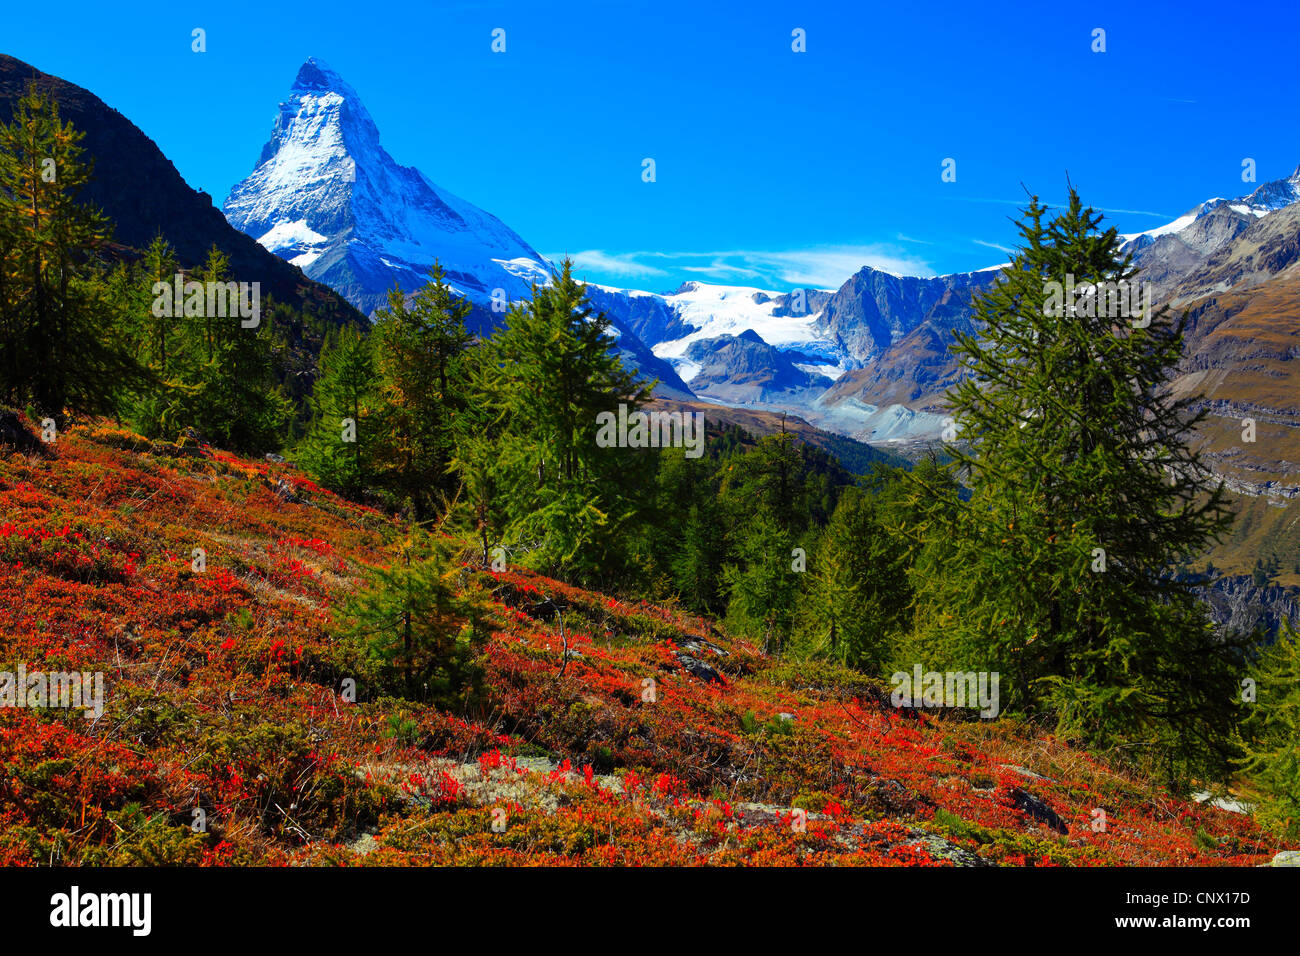 Dwarf arándano, Arándano, huckleberry, baja billberry (Vaccinium myrtillus), vistas al Matterhorn desde ladera de montaña con el arándano en otoño de coloración, Valais, Suiza Foto de stock